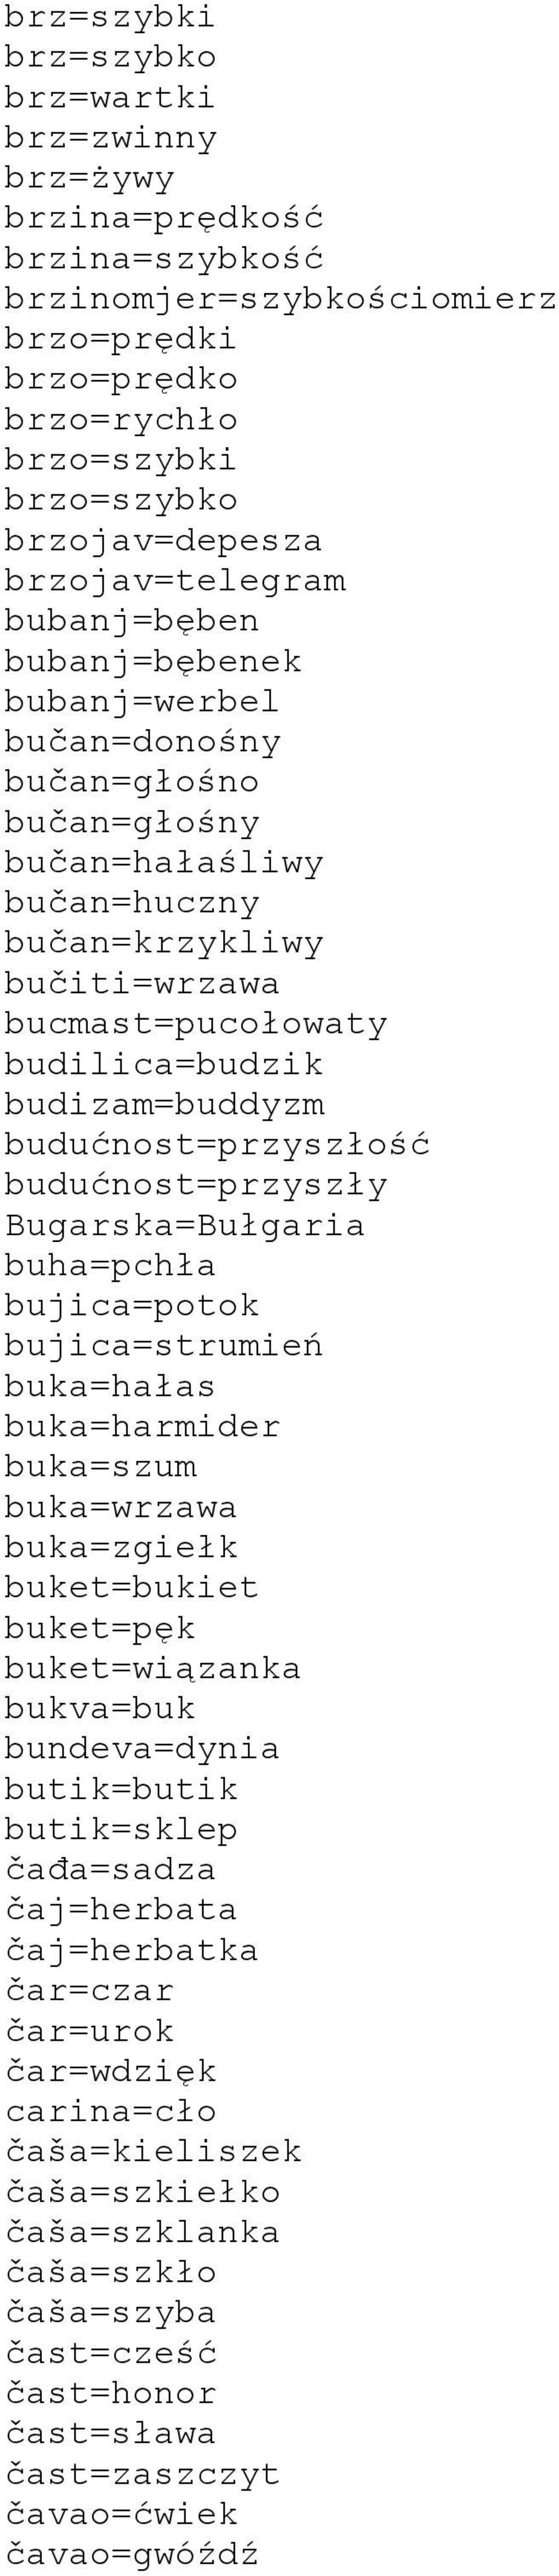 budizam=buddyzm budućnost=przyszłość budućnost=przyszły Bugarska=Bułgaria buha=pchła bujica=potok bujica=strumień buka=hałas buka=harmider buka=szum buka=wrzawa buka=zgiełk buket=bukiet buket=pęk